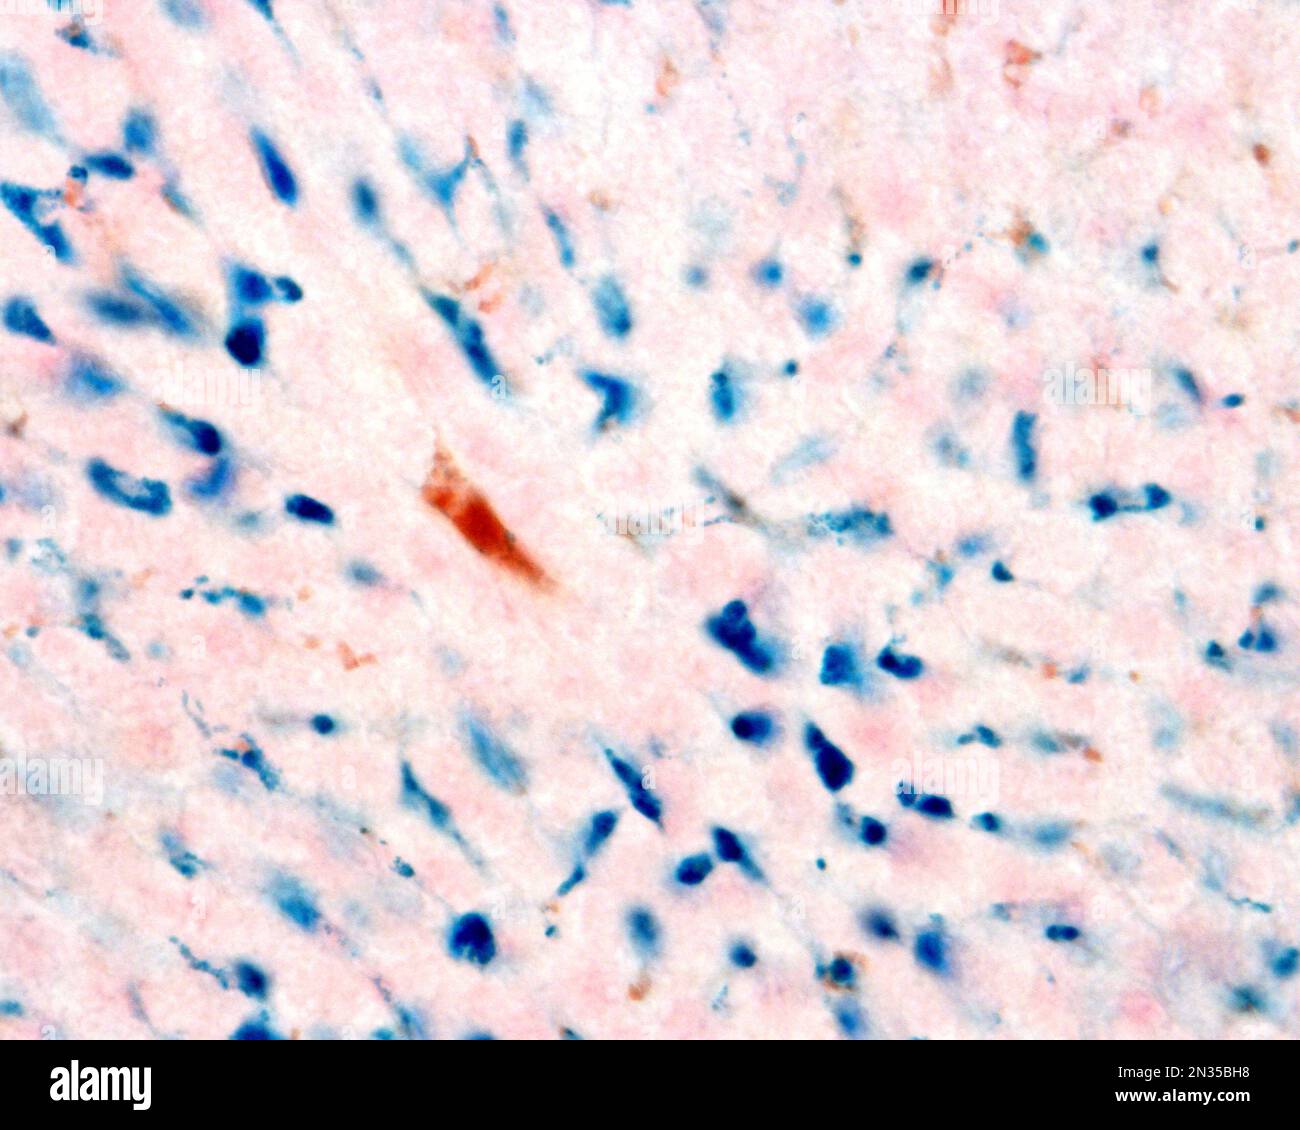 Les cellules de Kupffer sont des macrophages du foie. Le fer colloïdal agit comme une coloration vitale qui peut être introduite dans le corps étant phagocyté par les cellules Kupffer, Banque D'Images